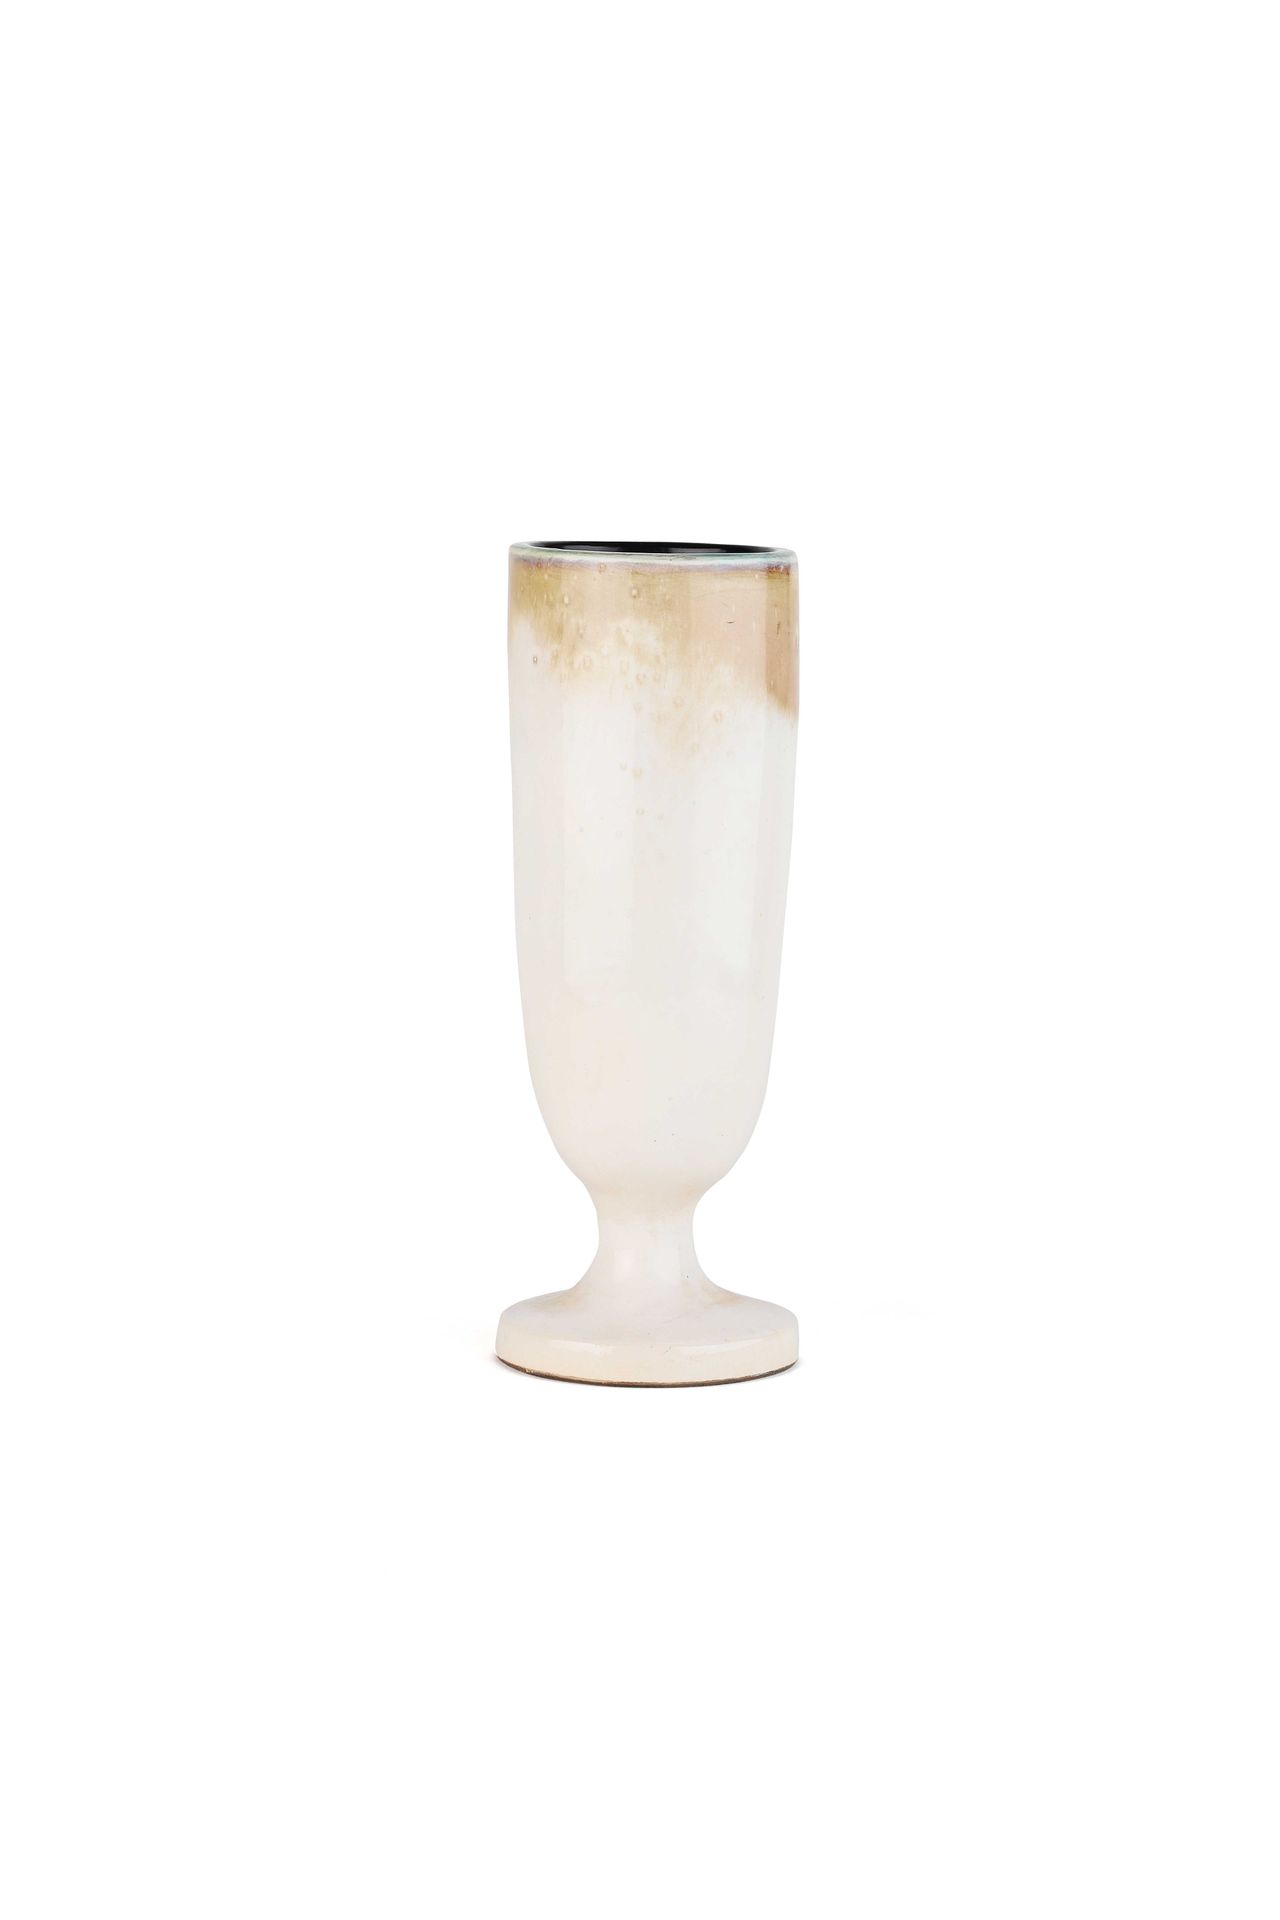 Null 乔治-朱夫(1910-1964)

陶瓷花瓶 有签名和字样的29 x 10.5厘米。1958

花瓶 釉面石器 11.42 4.13英寸